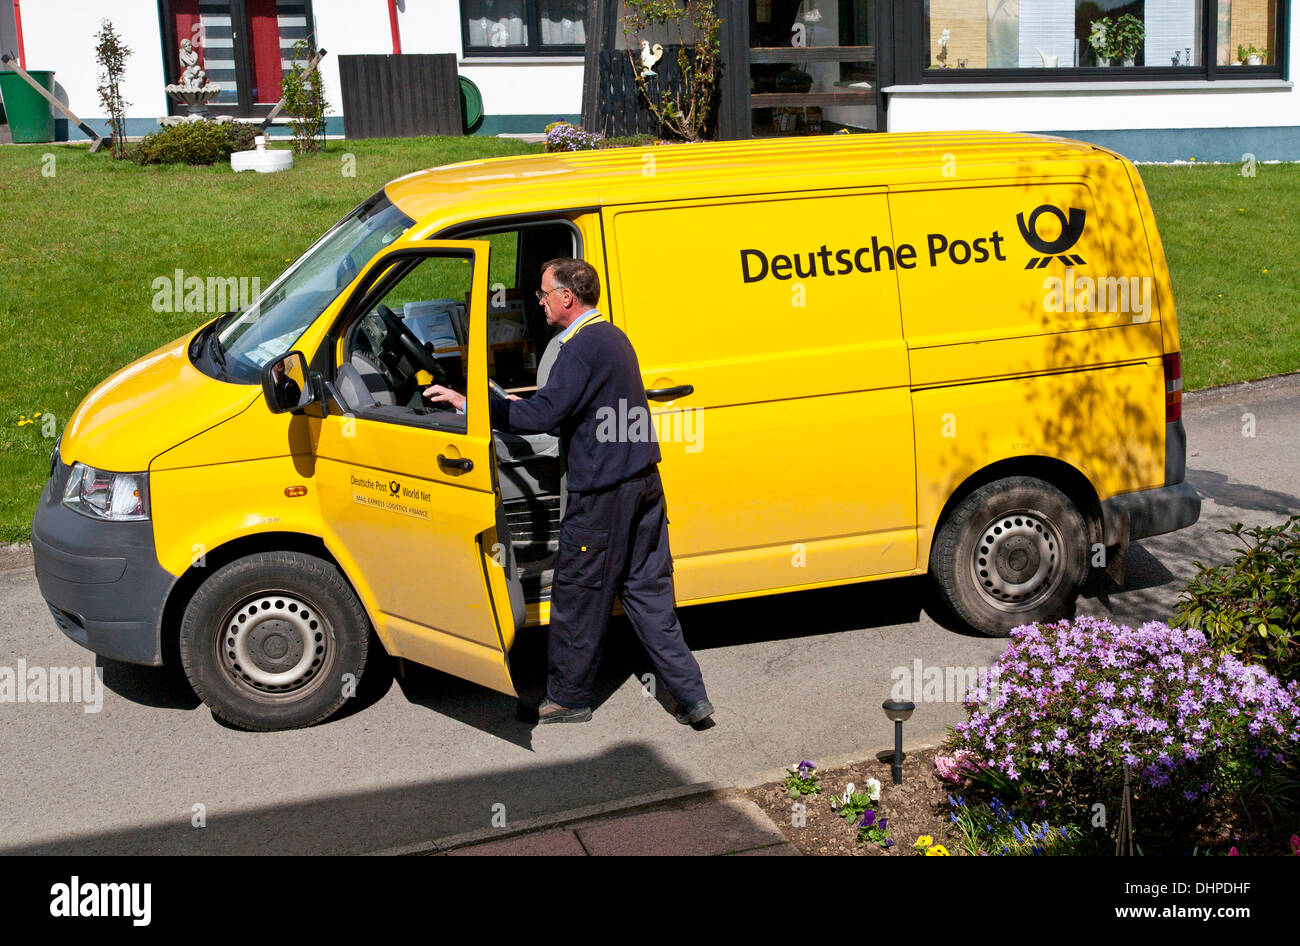 Deutsche Post van Stockfoto